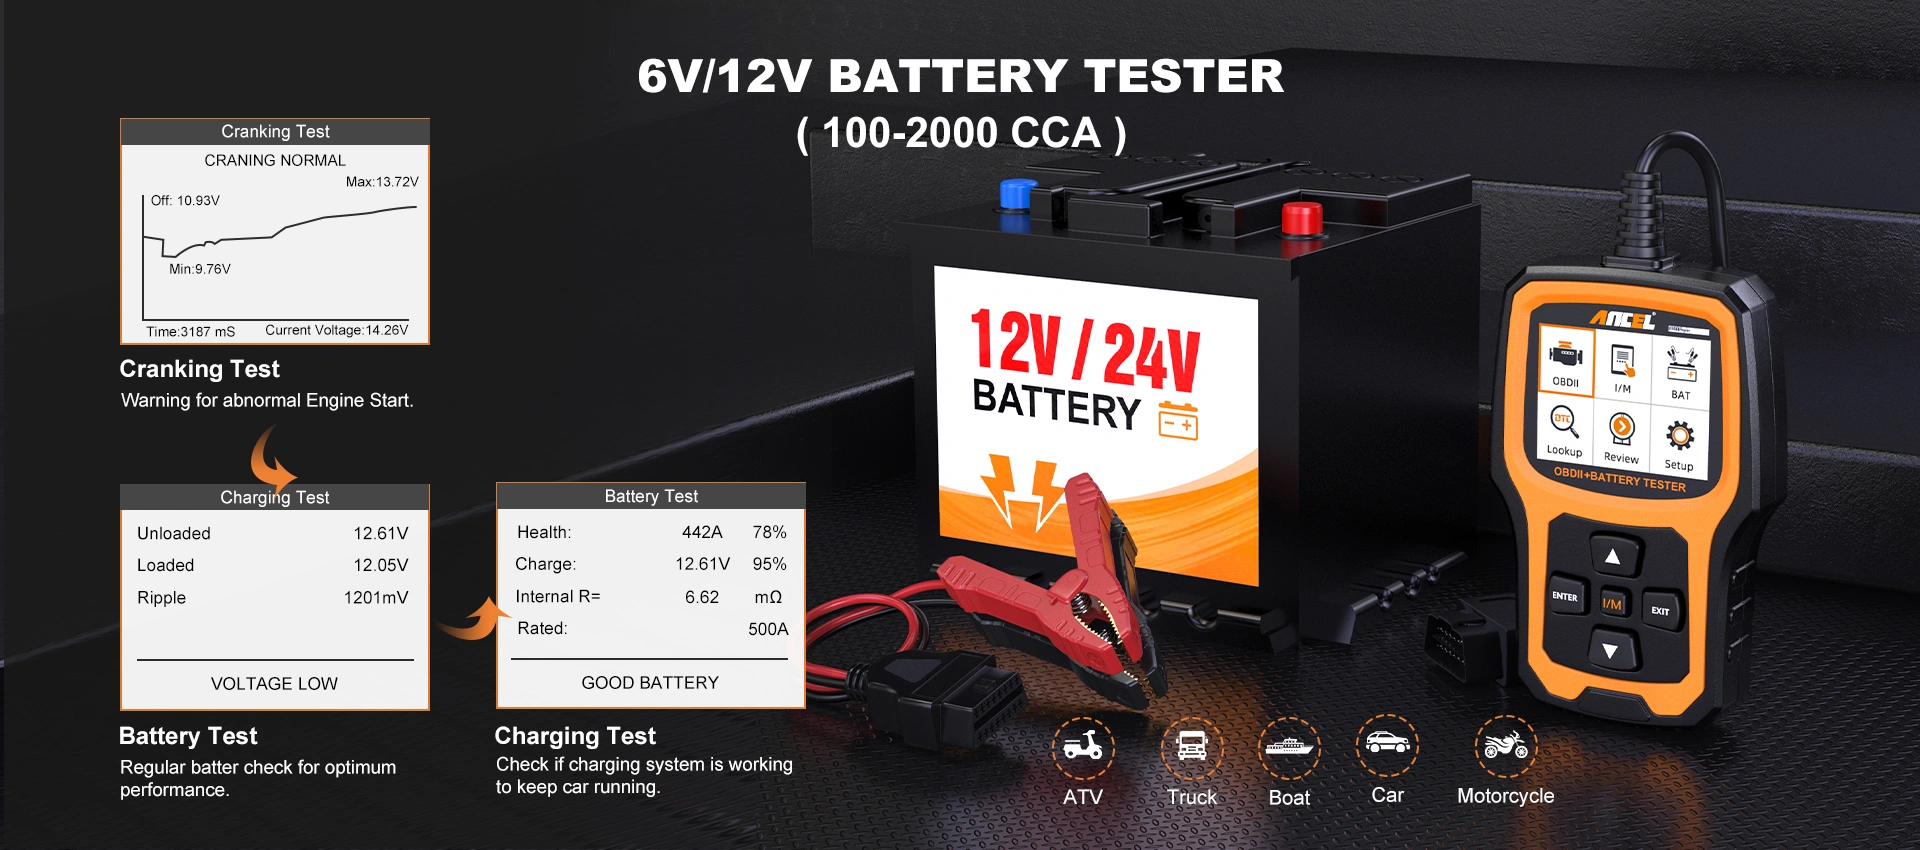 6V/12V Battery Tester